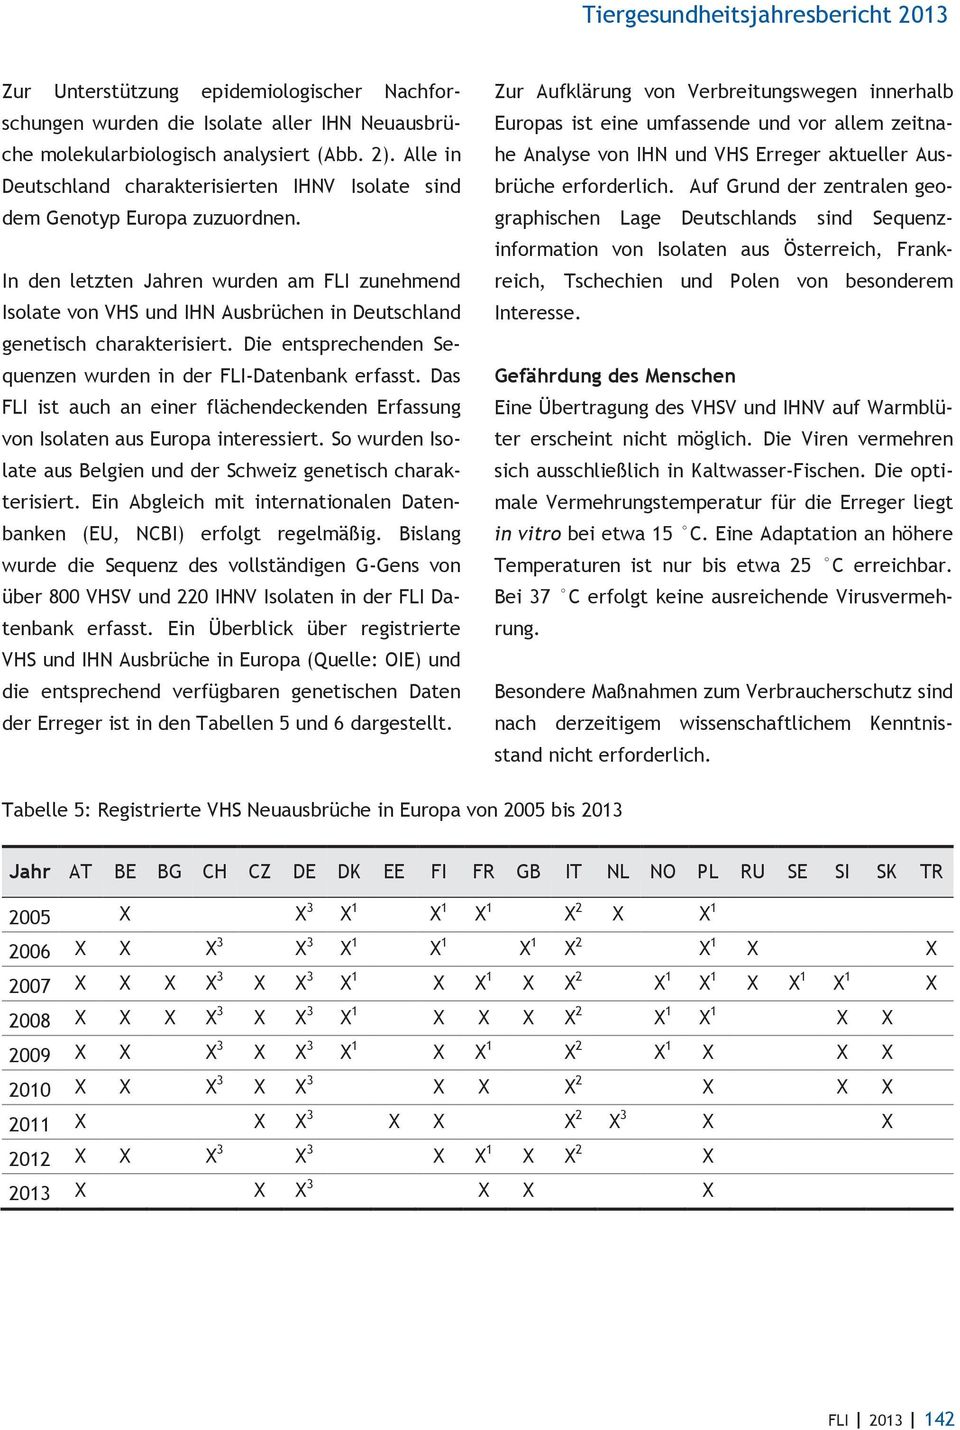 In den letzten Jahren wurden am FLI zunehmend Isolate von VHS und IHN Ausbrüchen in Deutschland genetisch charakterisiert. Die entsprechenden Sequenzen wurden in der FLI-Datenbank erfasst.